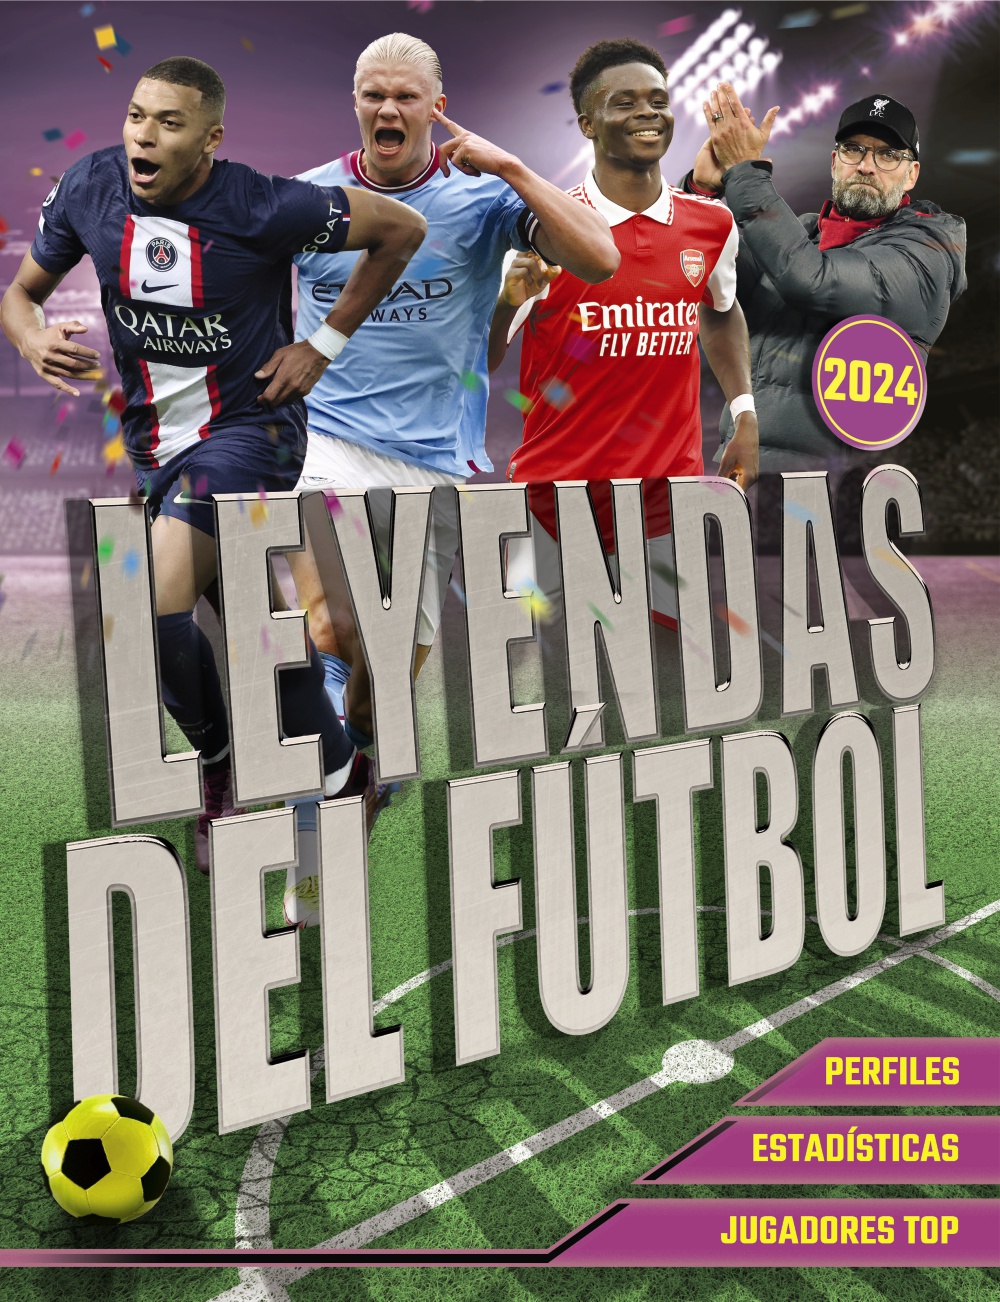 leyendas-del-futbol-edicion-2024-978-84-415-4868-8.jpg